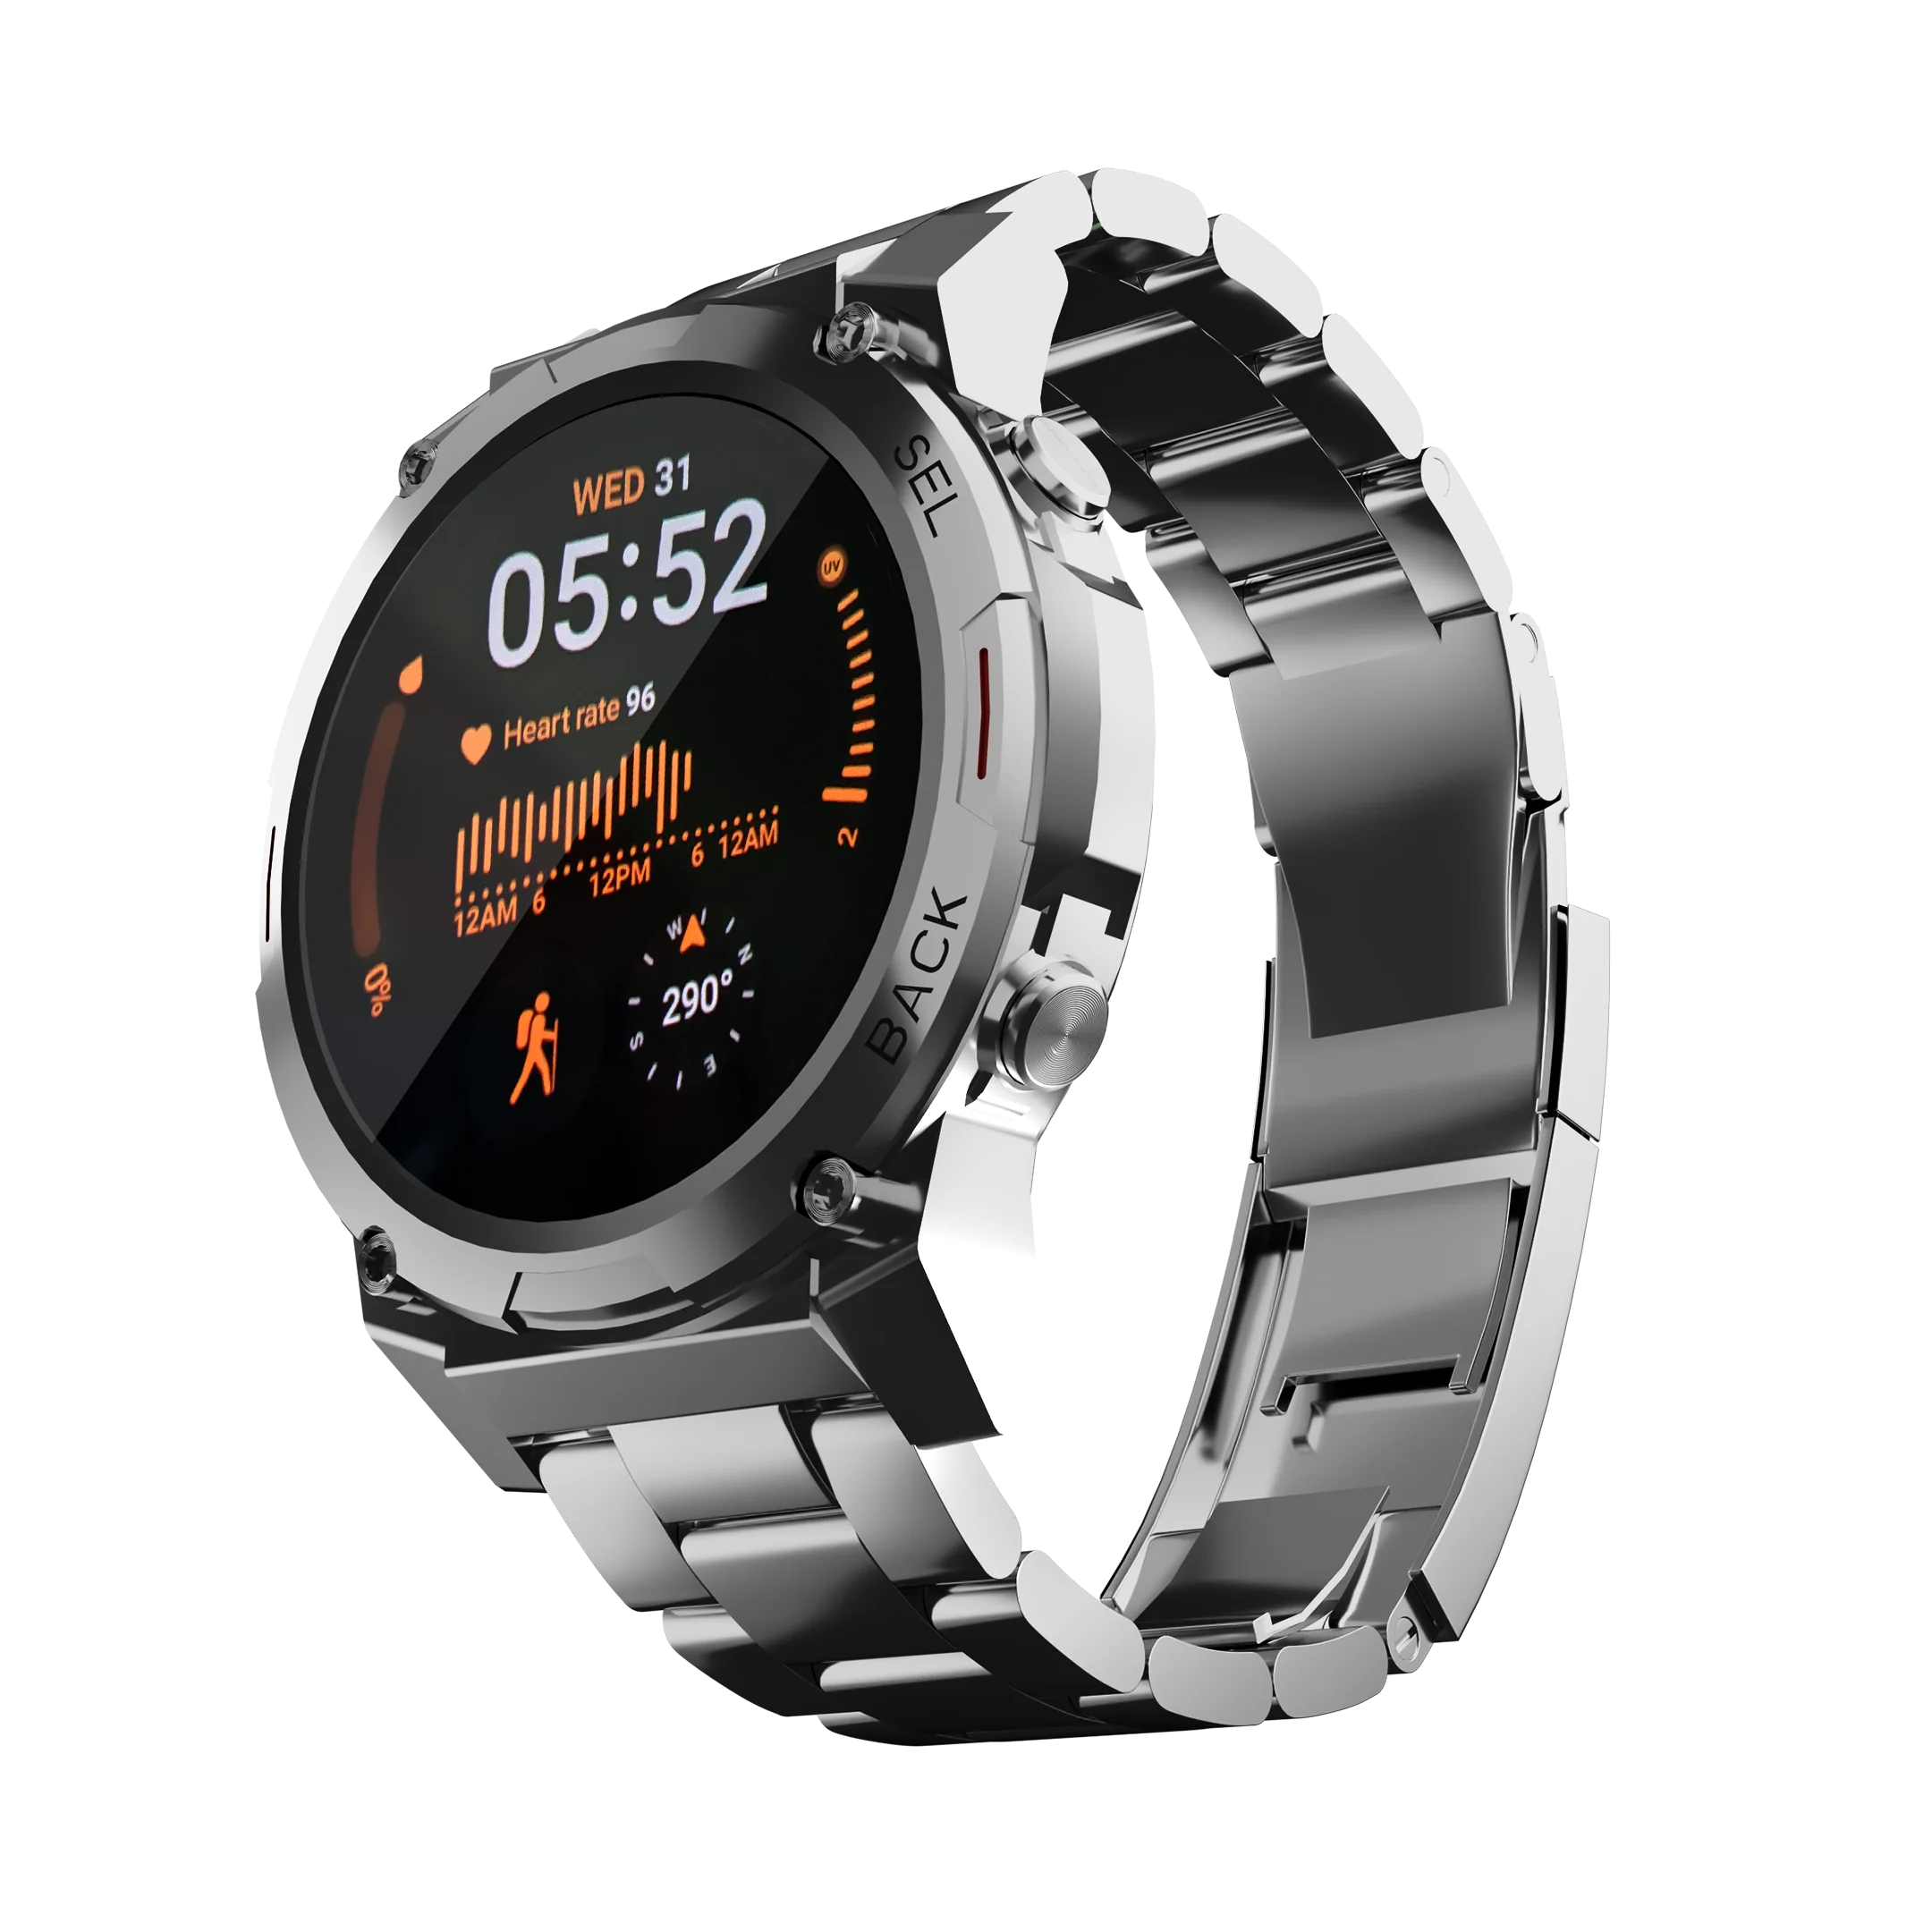 Ronin R-011 LUXE Smart Watch